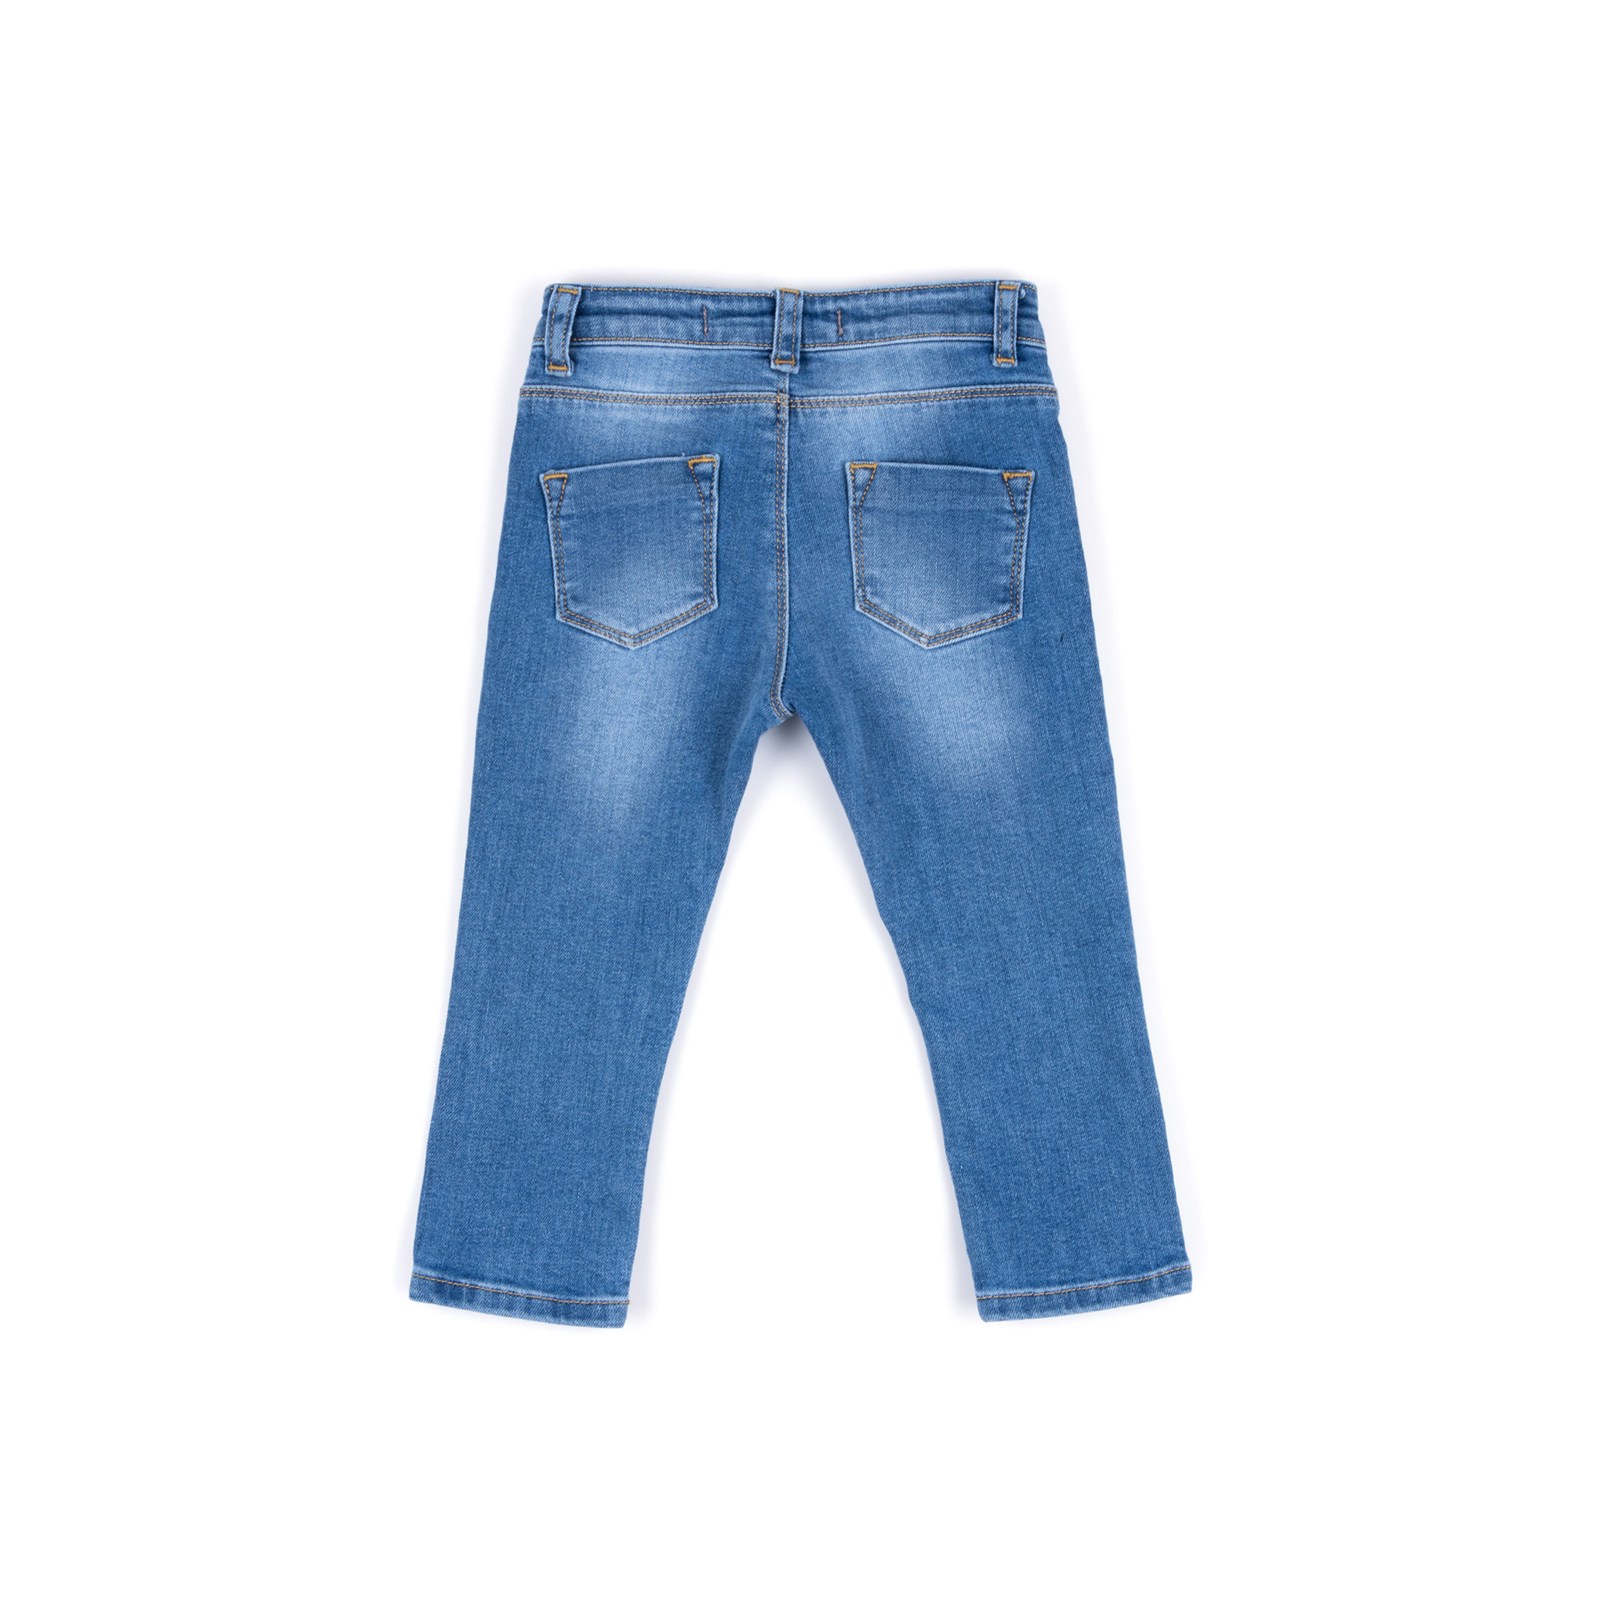 Джинсы Breeze джинсовые с цветочками (OZ-17703-98G-jeans) изображение 4